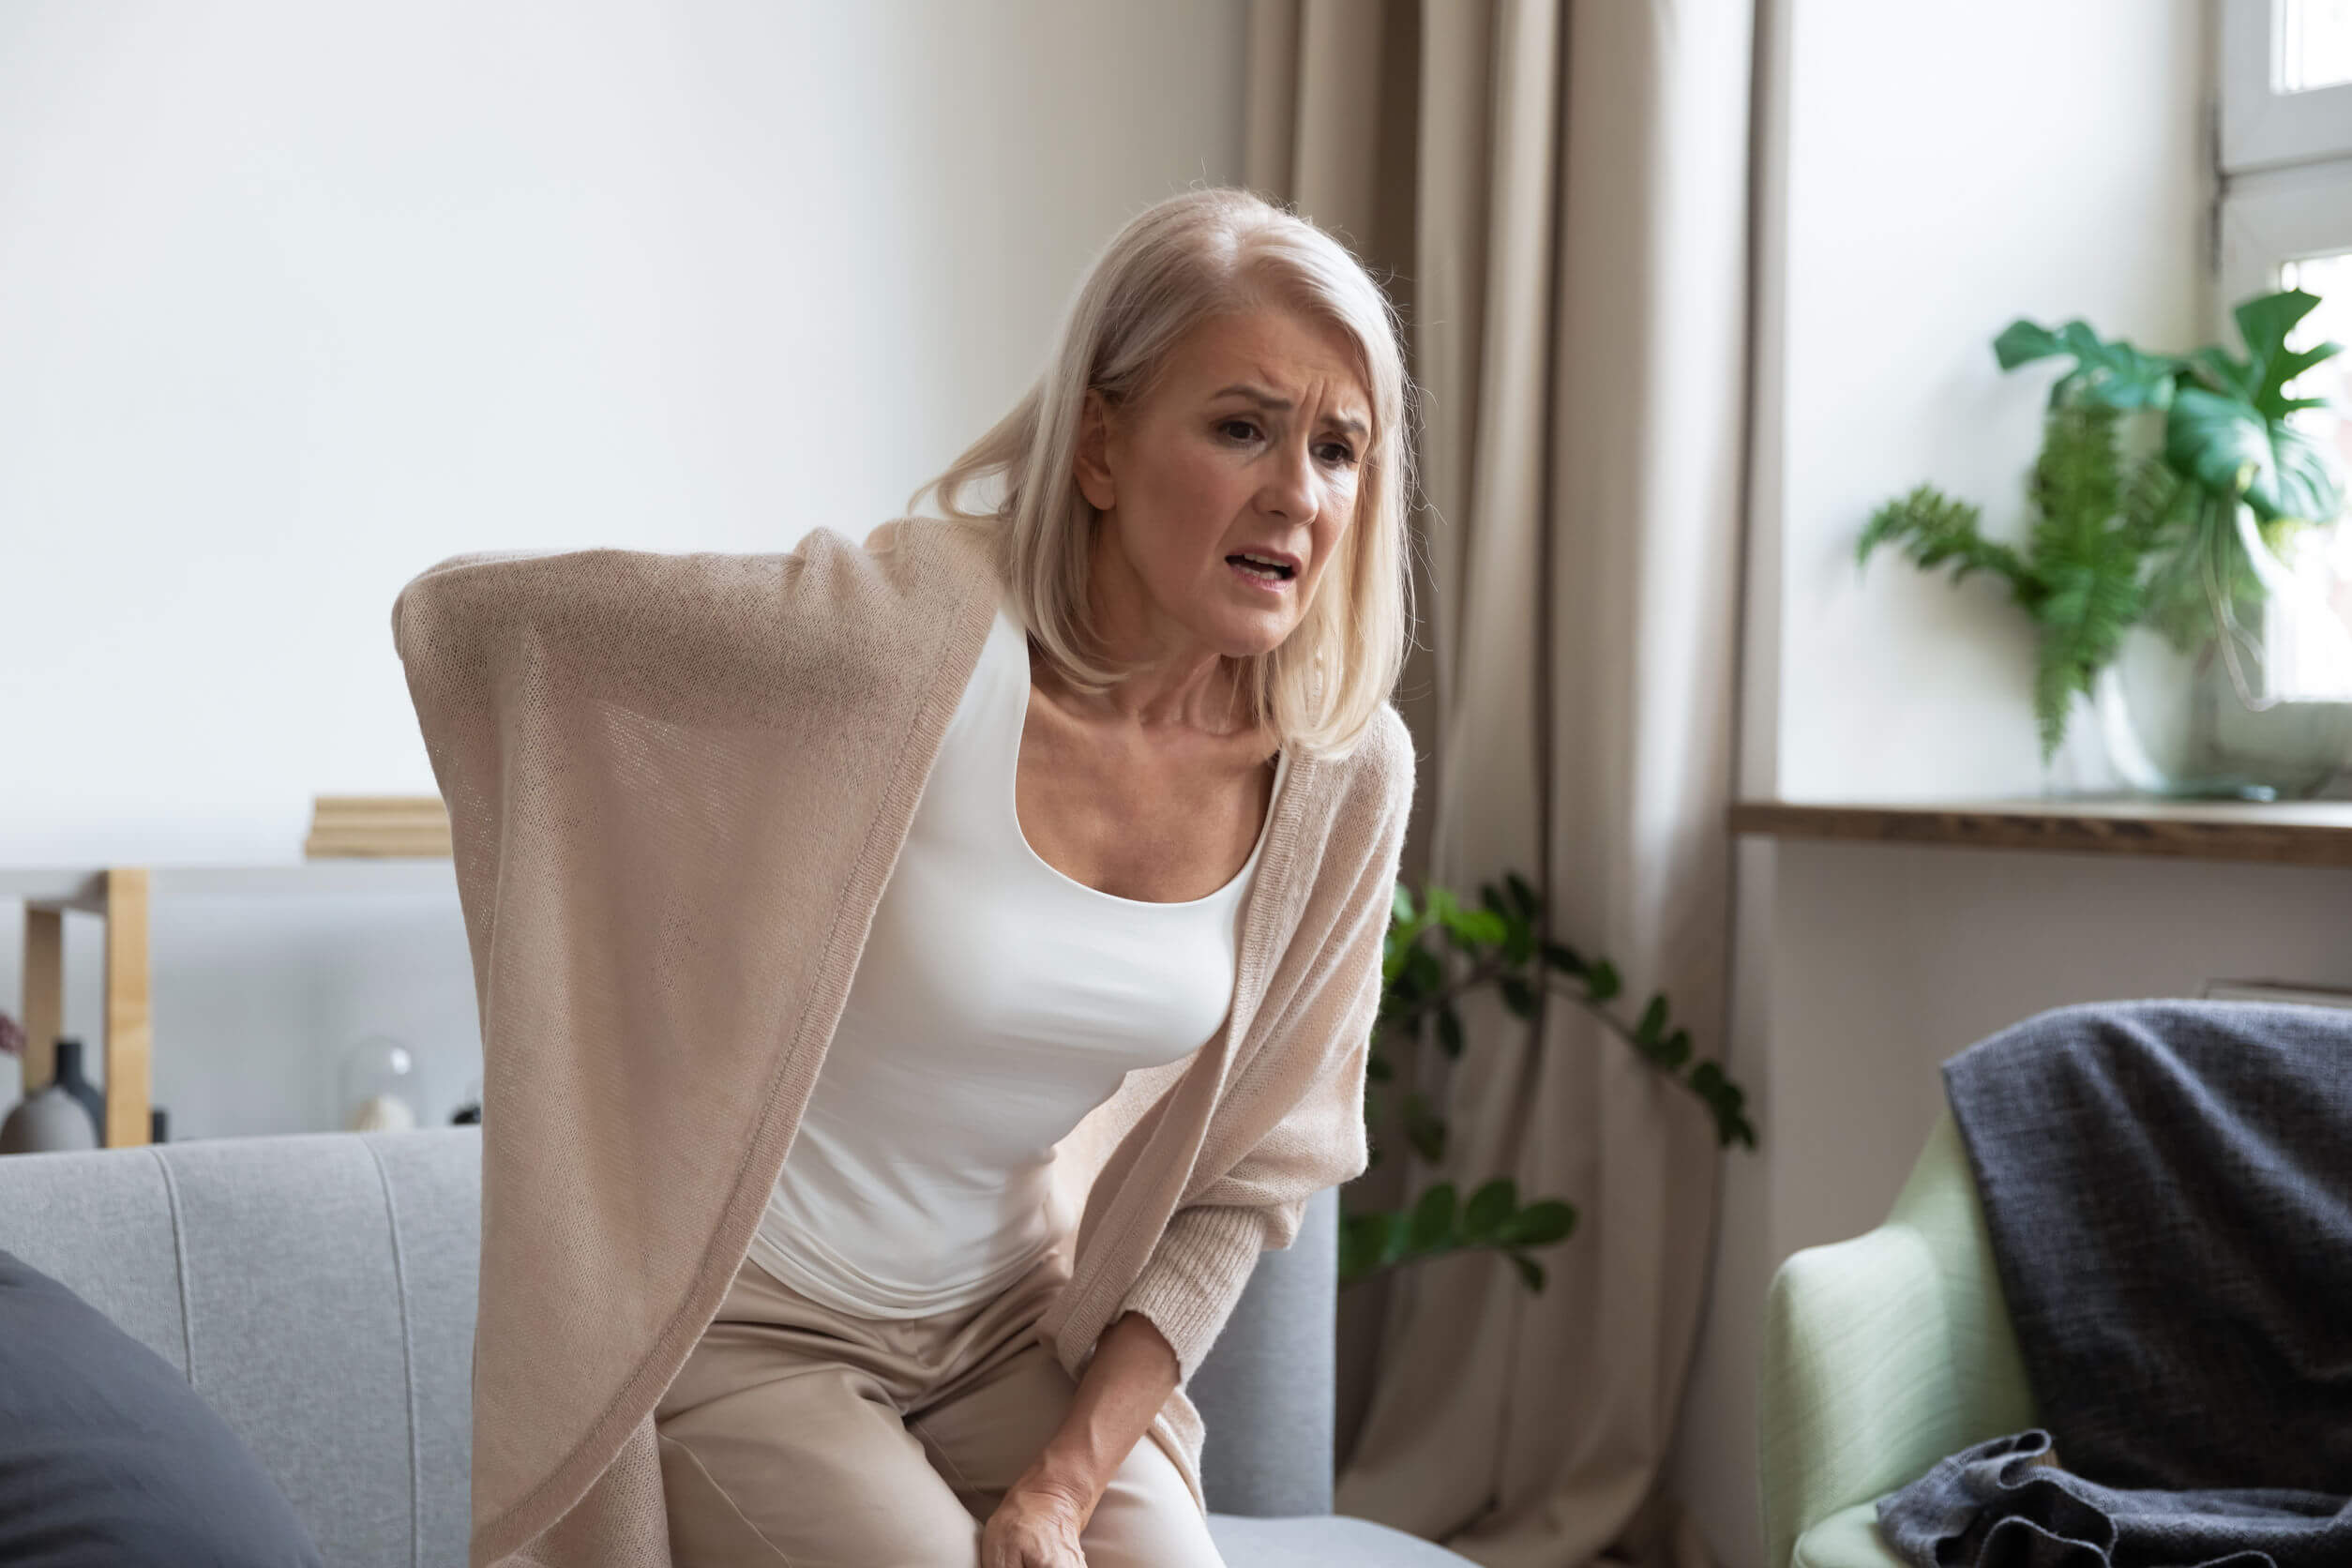 Le cause e i fattori di rischio della menopausa: dolori articolari